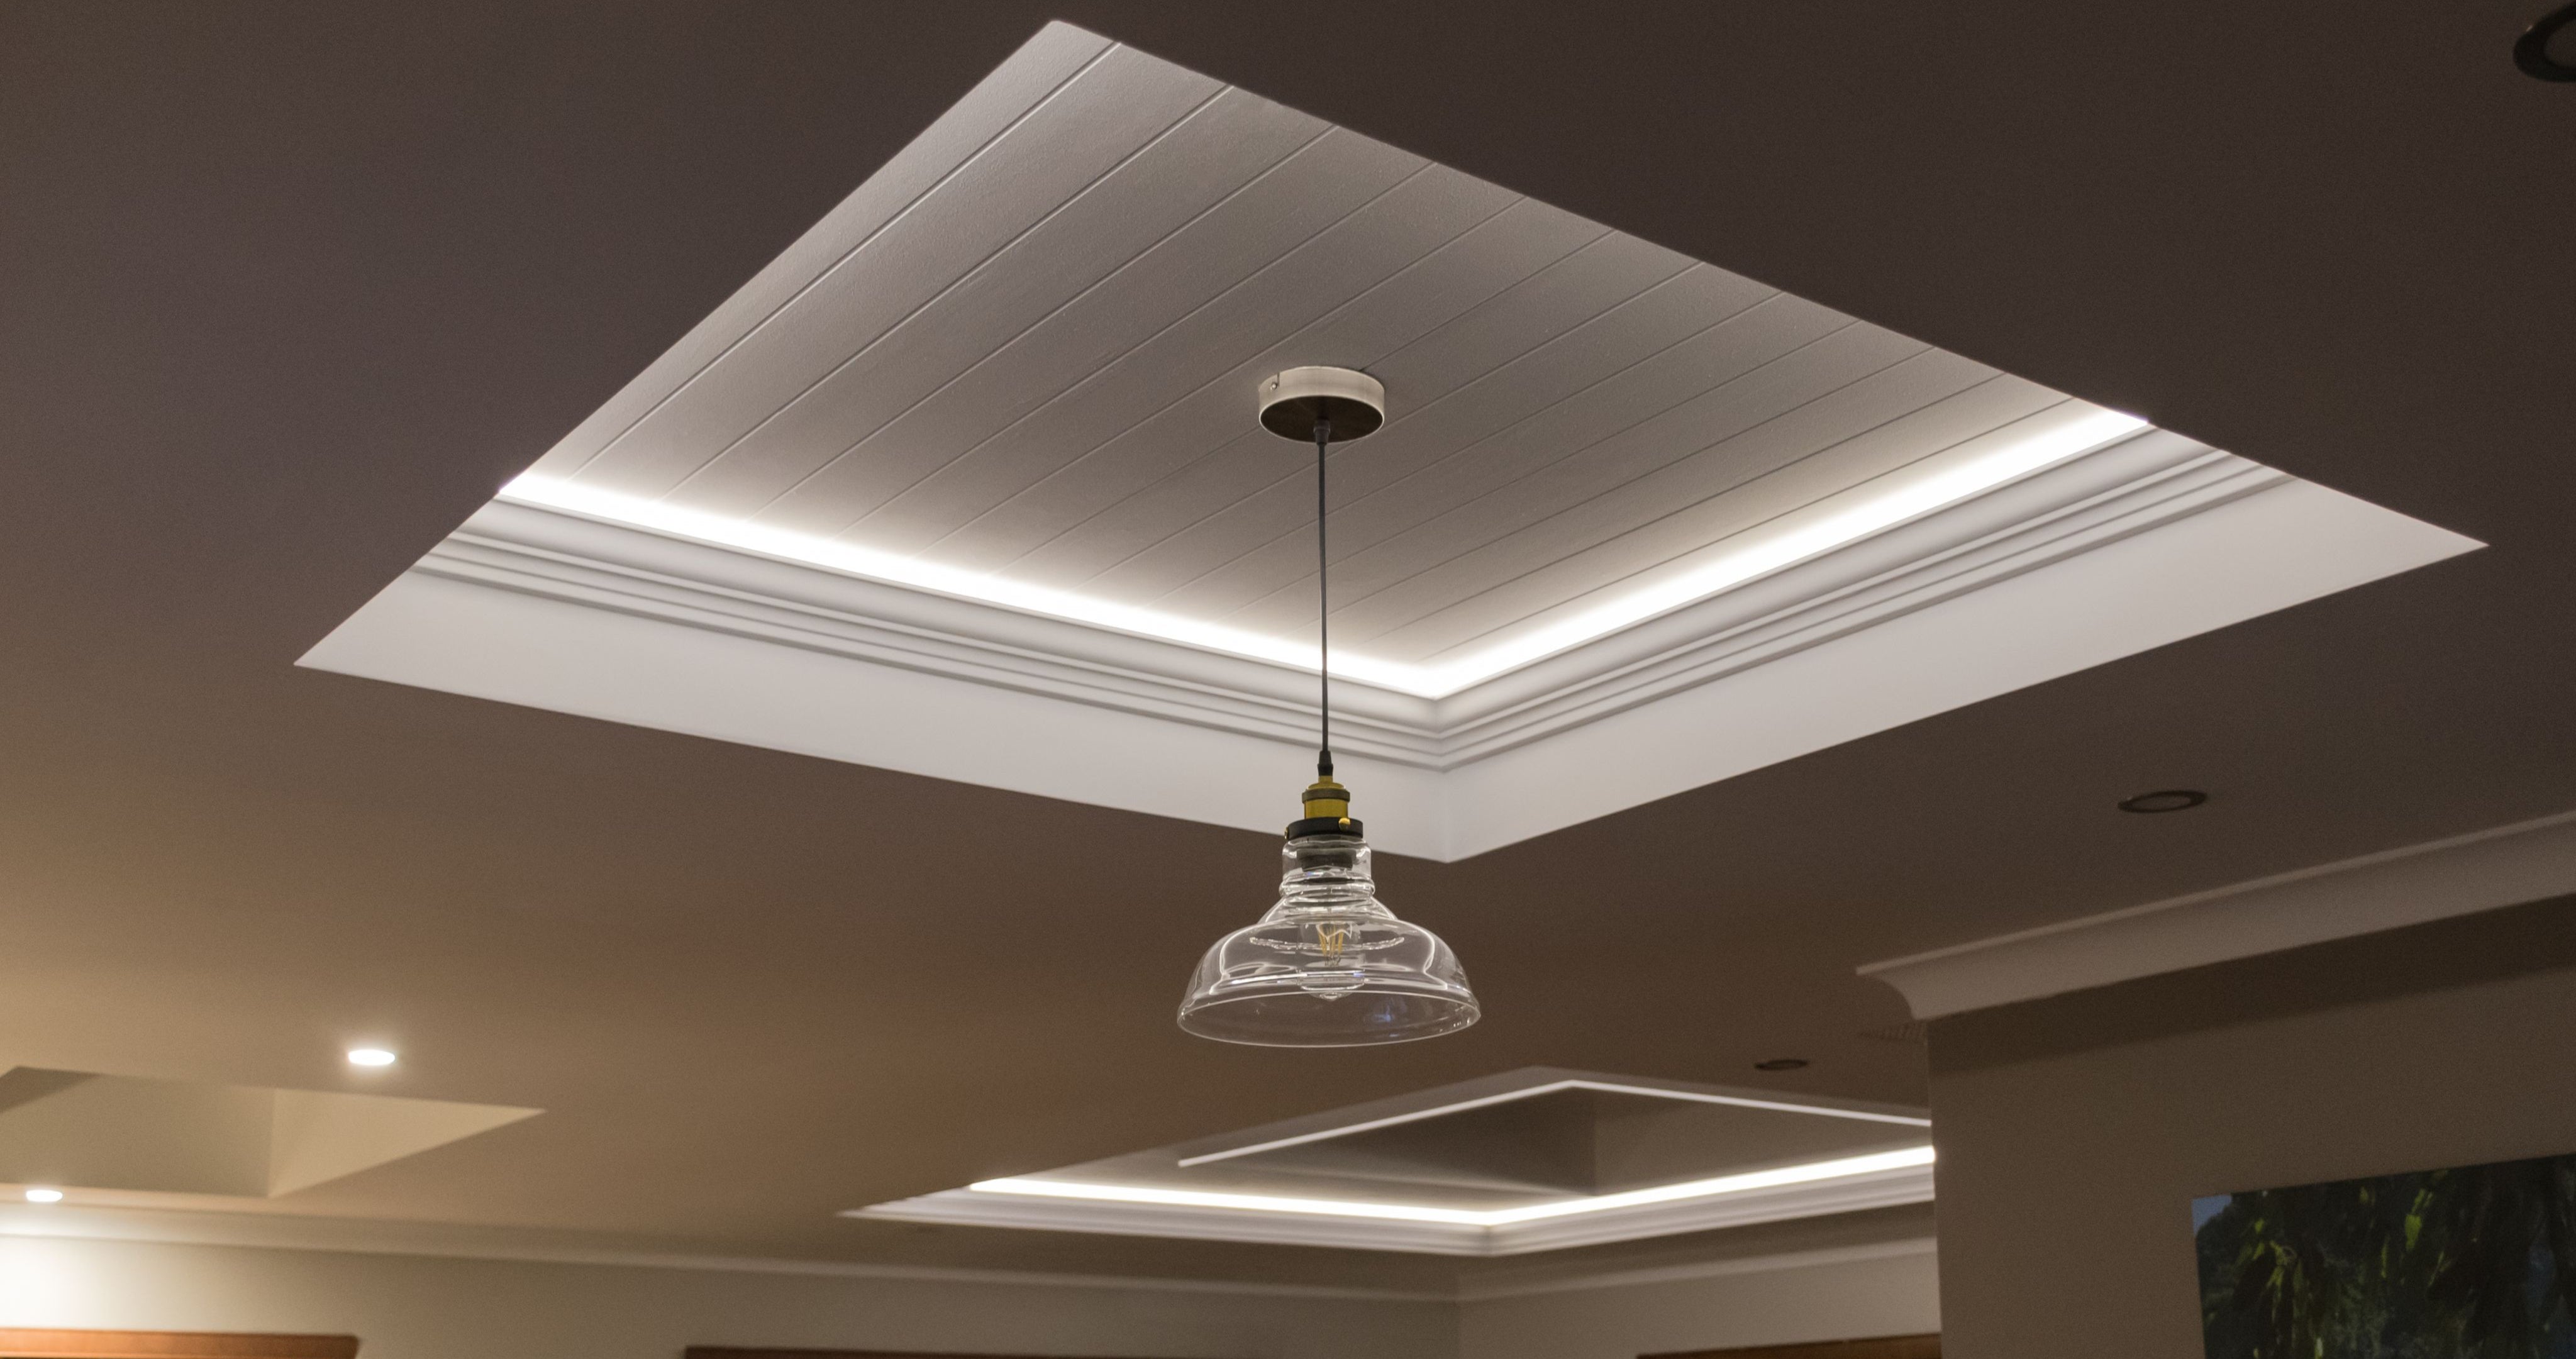 LED Lights UK: LED Strip & Ceiling Lighting, Bulbs